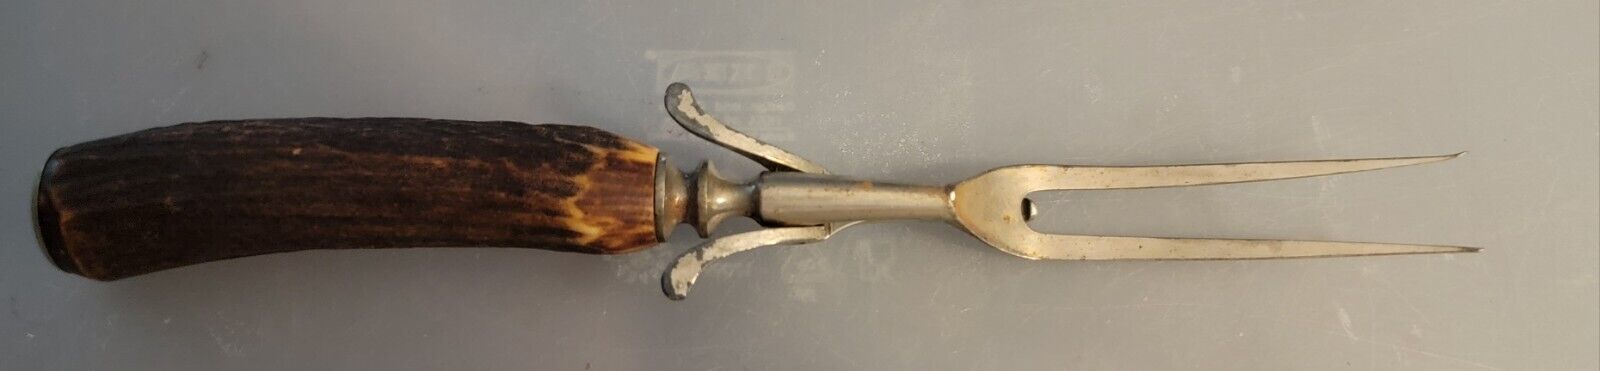 Vintage Antique Ornate Carving Fork w/ Stand  10\